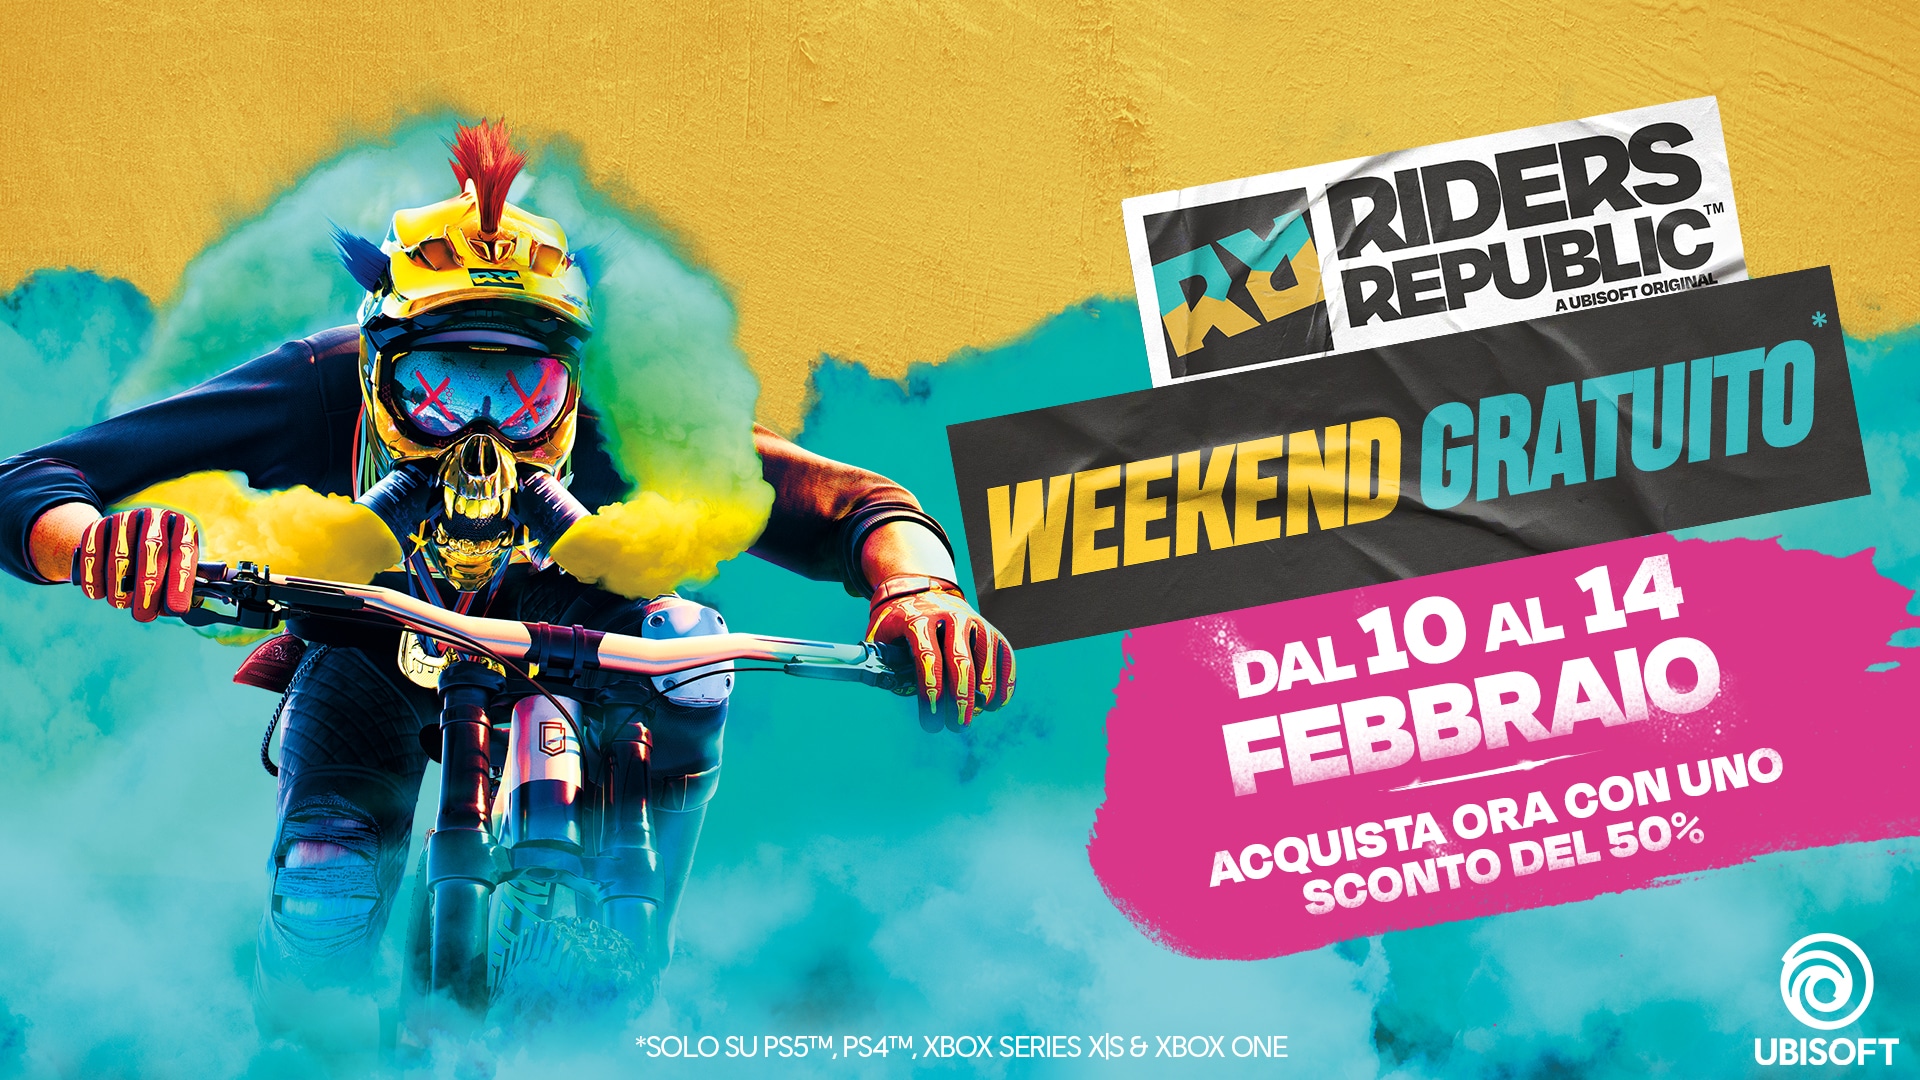 Riders Republic annuncia la collaborazione con Prada e un weekend gratis thumbnail